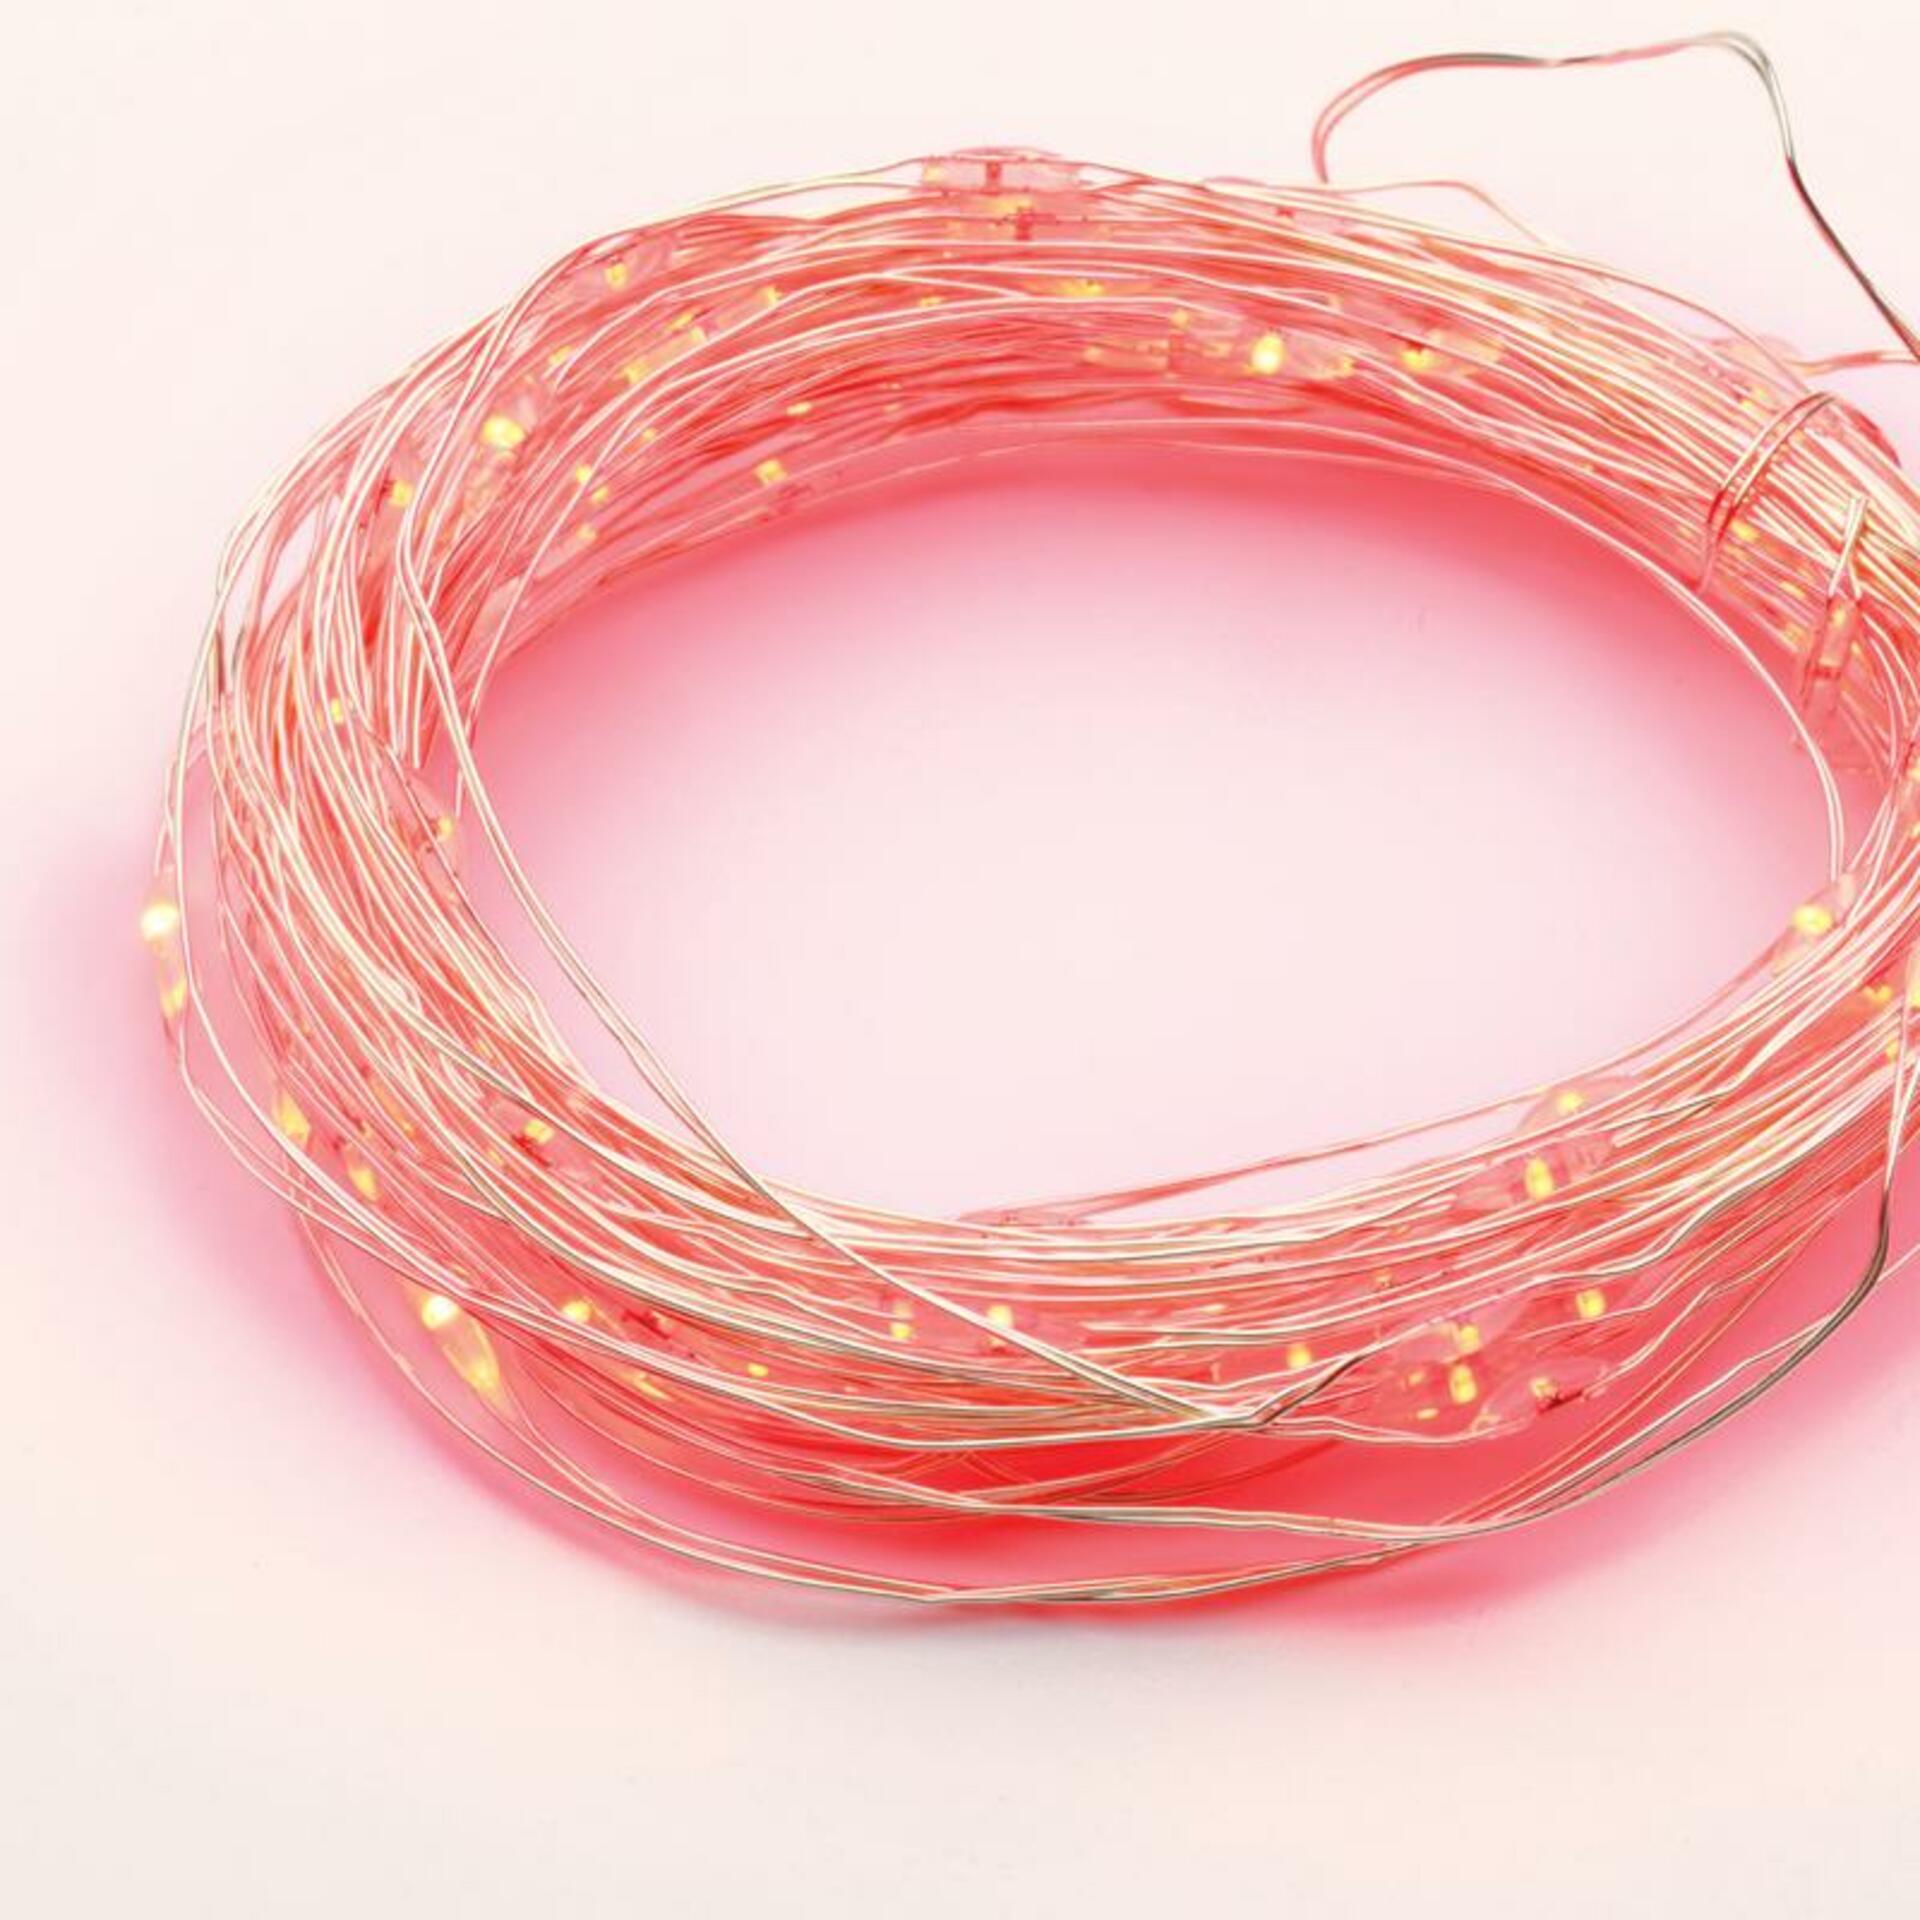 ACA Lighting 100 LED dekorační řetěz s časovačem červená stříbrný měďený kabel na baterie 3XAA IP44 10m+10cm X01100415